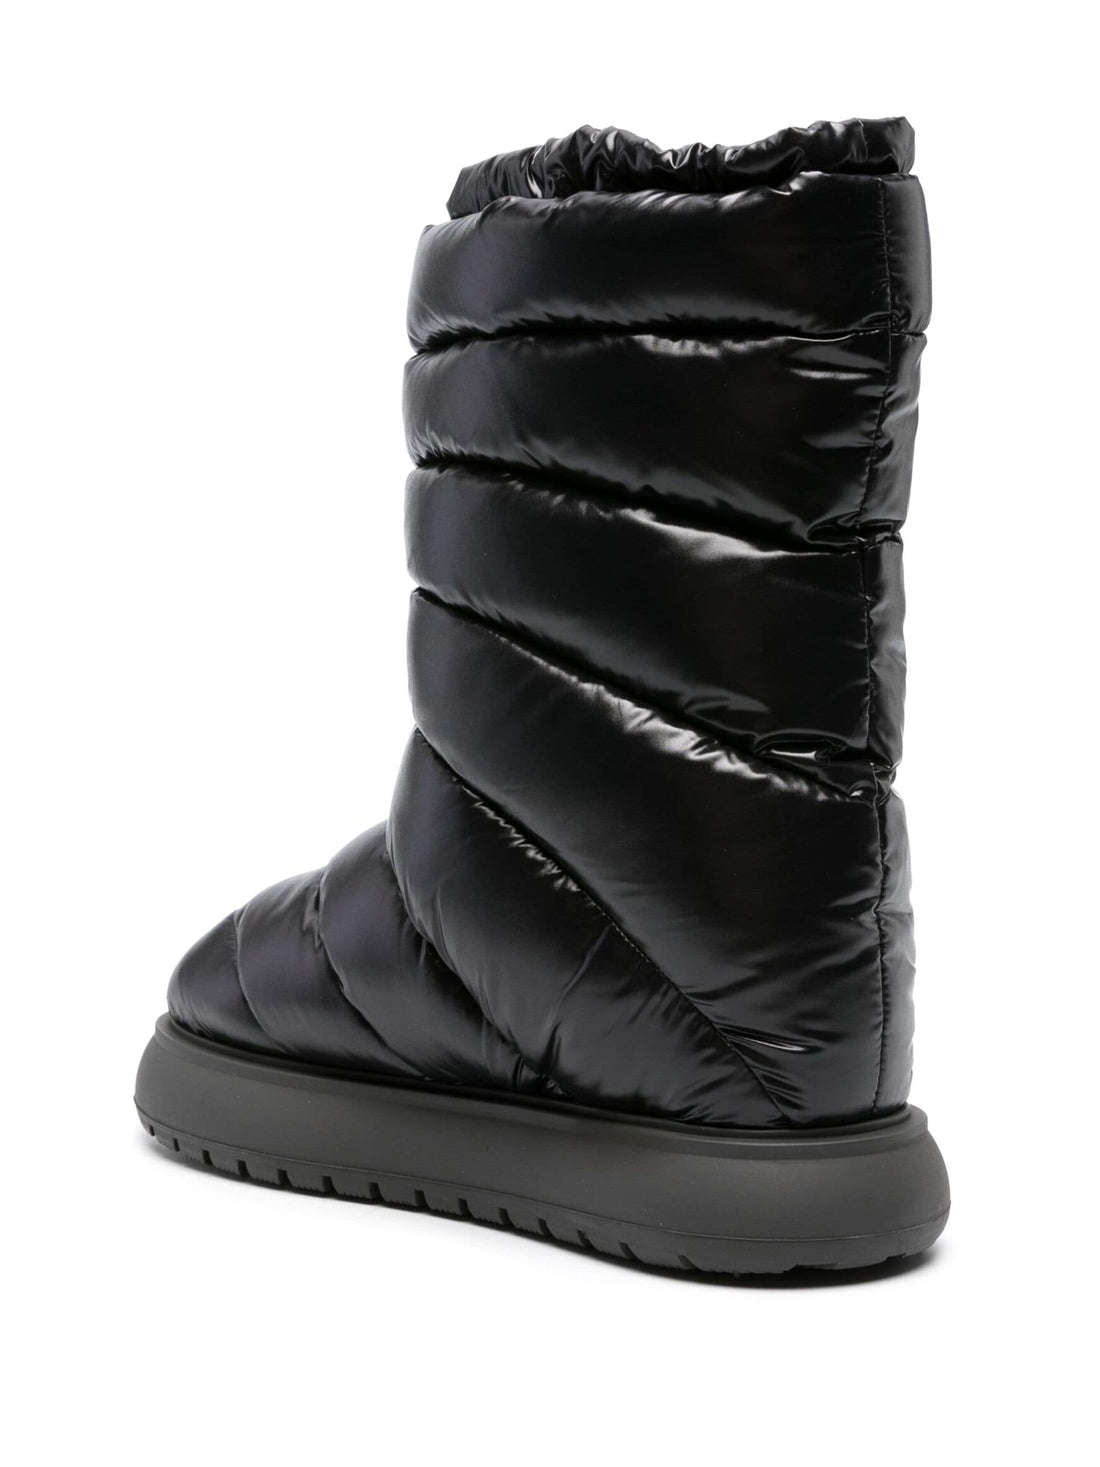 MONCLER WOMEN Gaia Pocket Mid Snow Boots Black - MAISONDEFASHION.COM